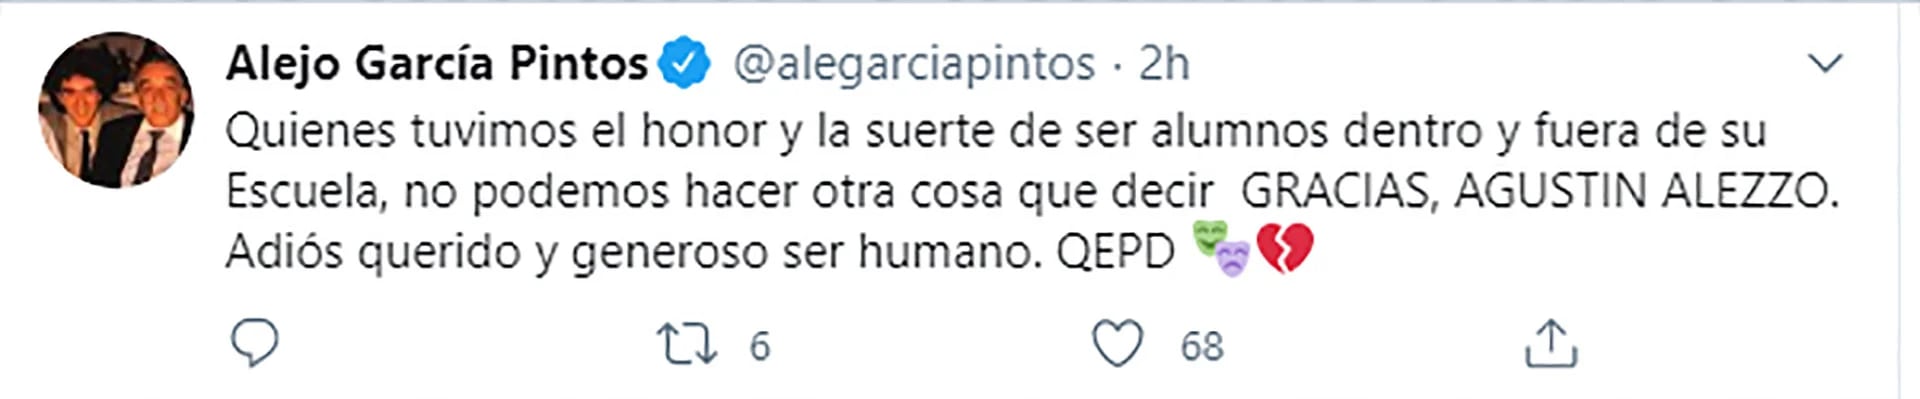 El tuit de Alejo García Pintos